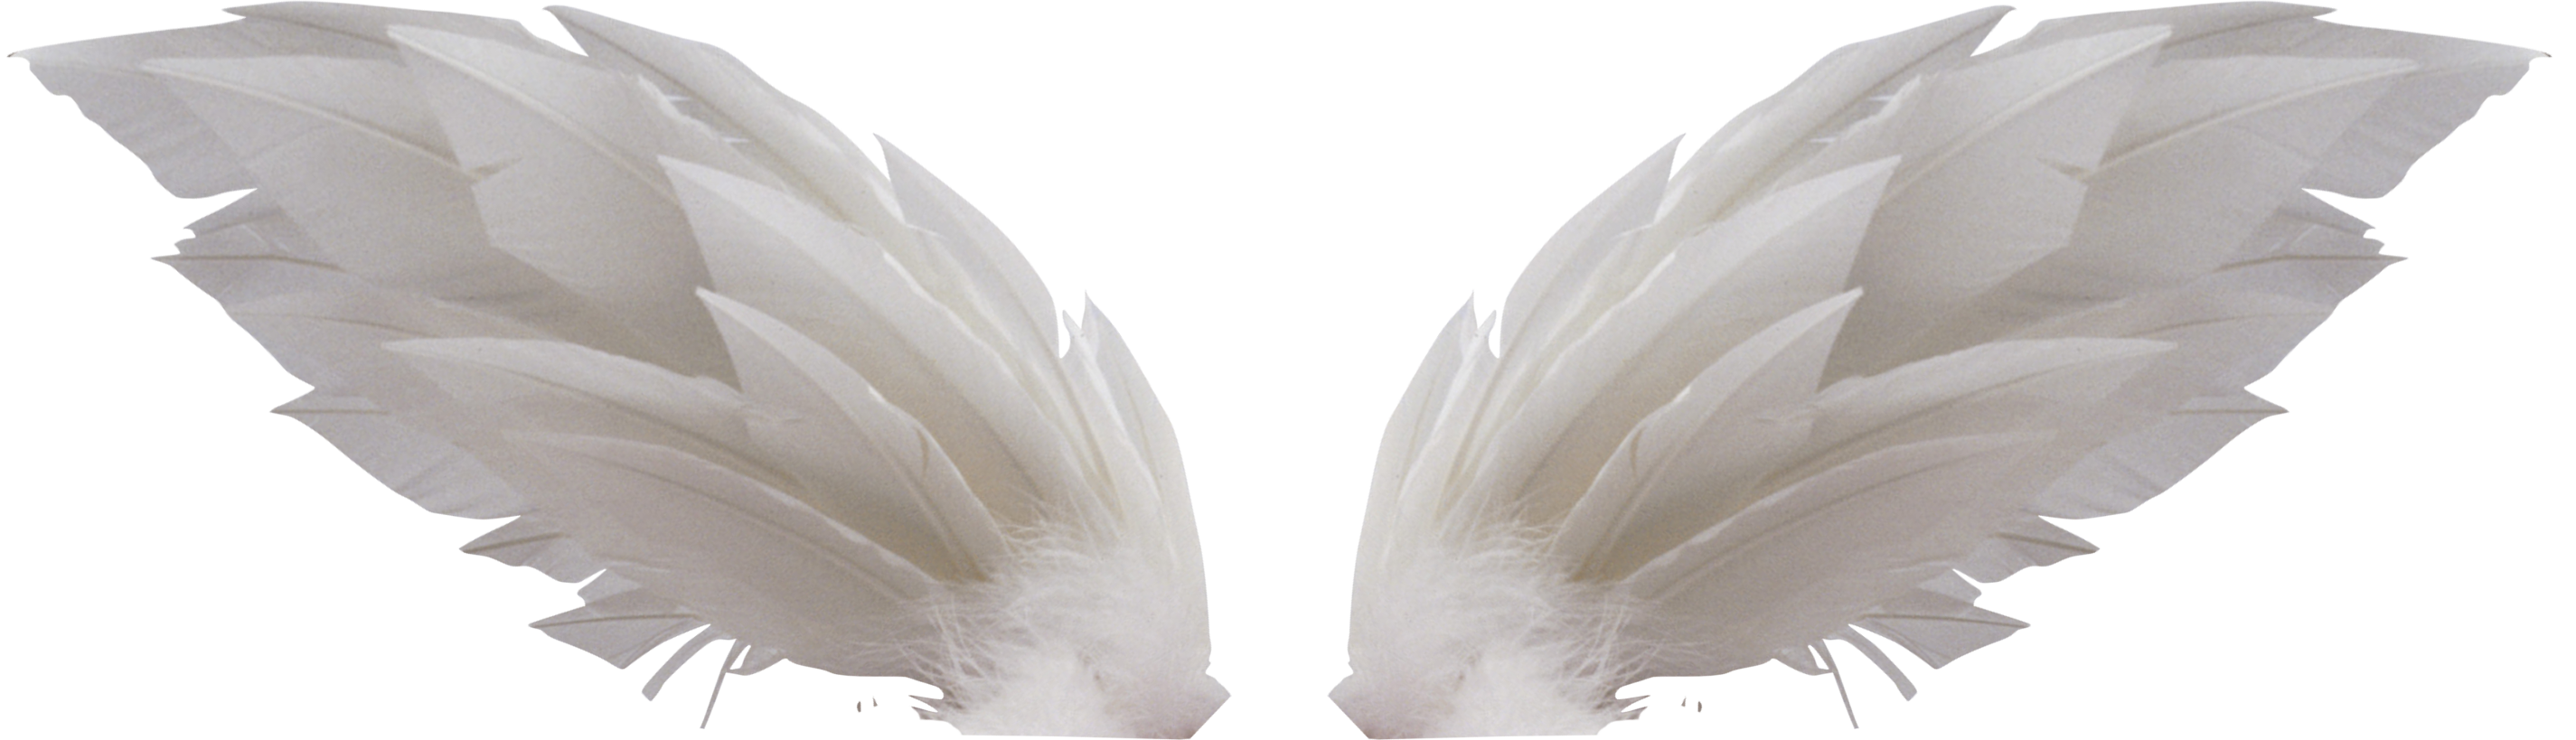 白い翼